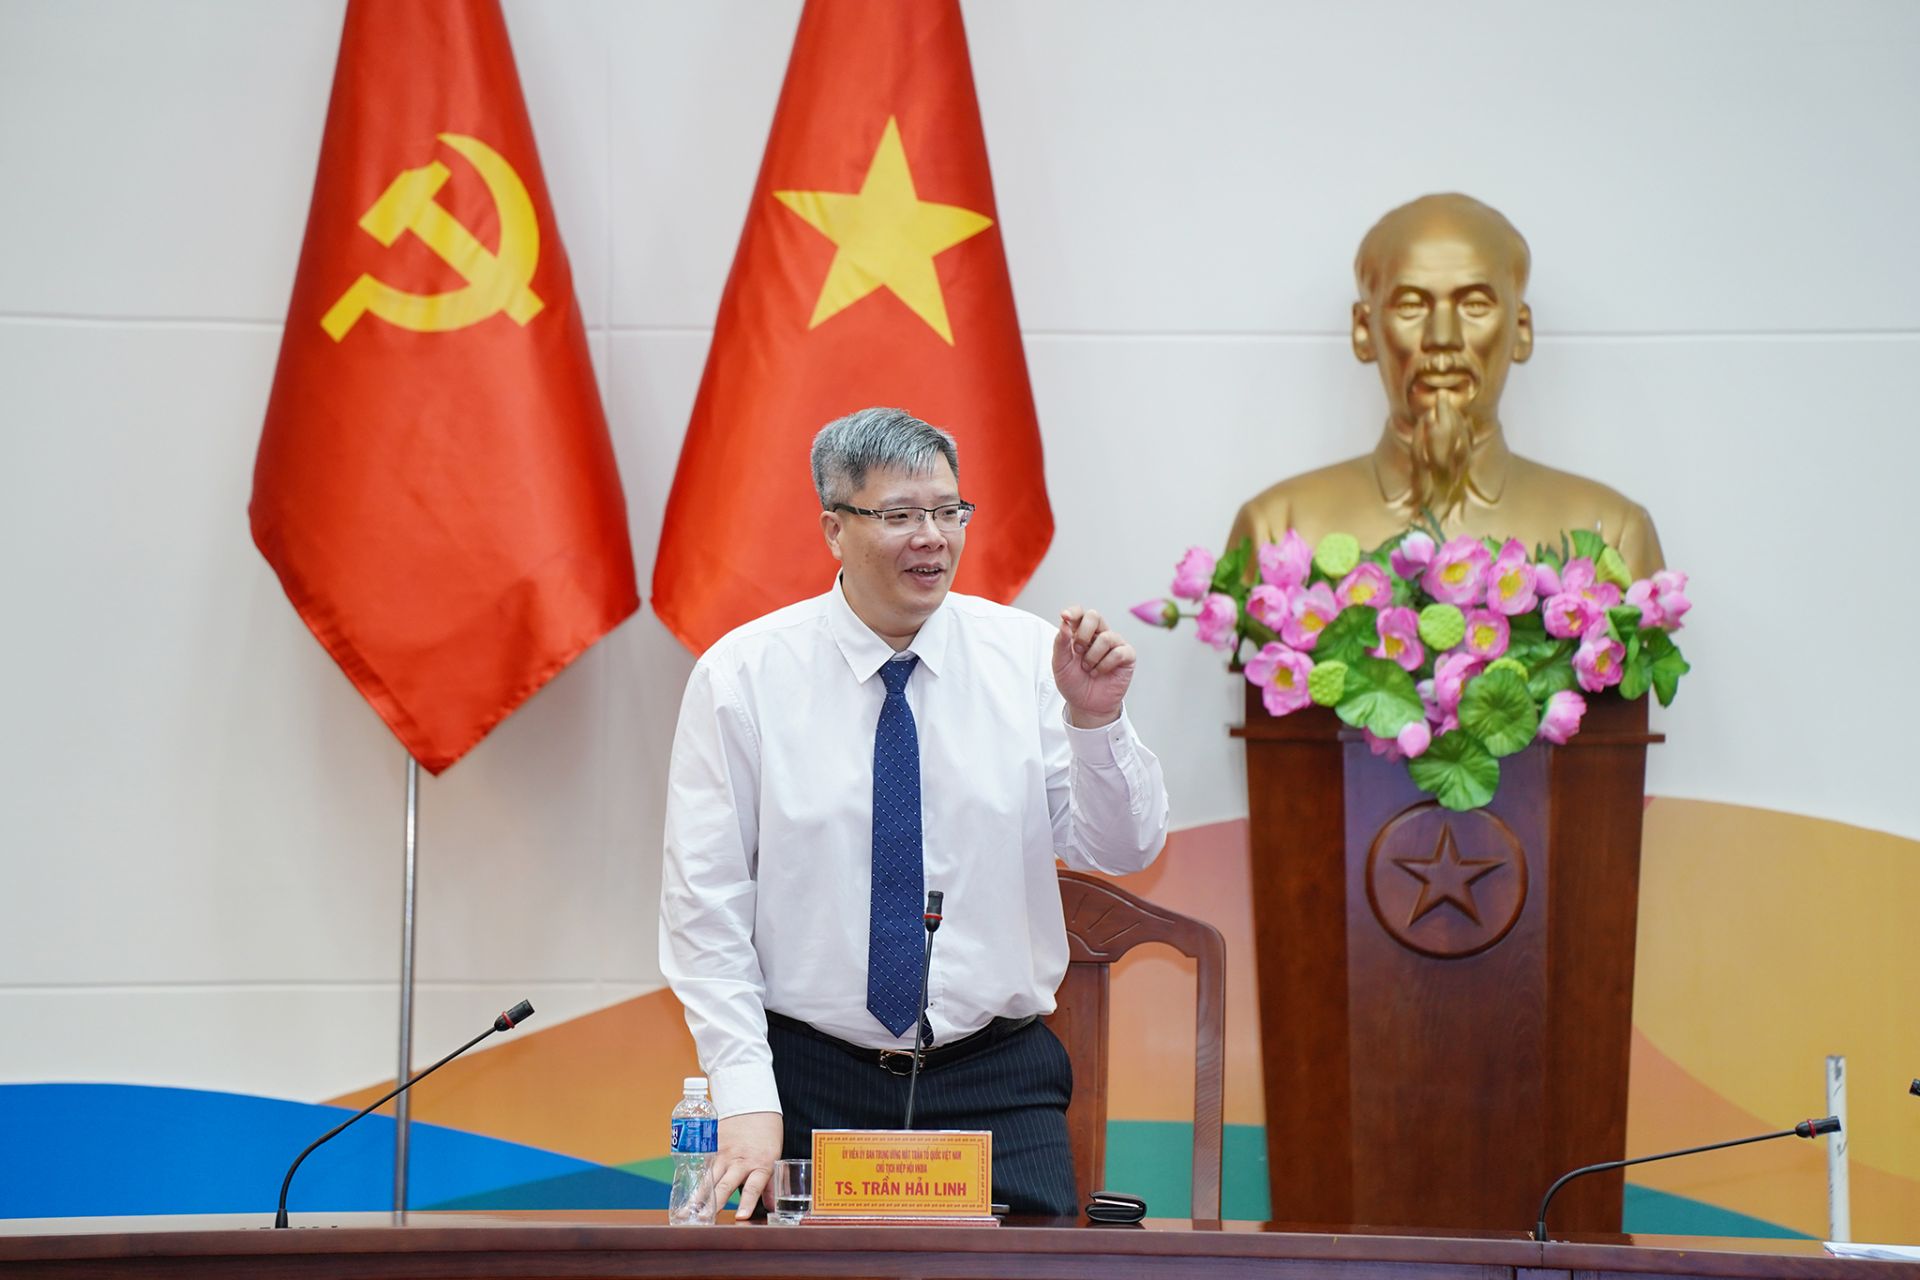 Chủ tịch VKBIA Trần Hải Linh phát biểu tại buổi làm việc